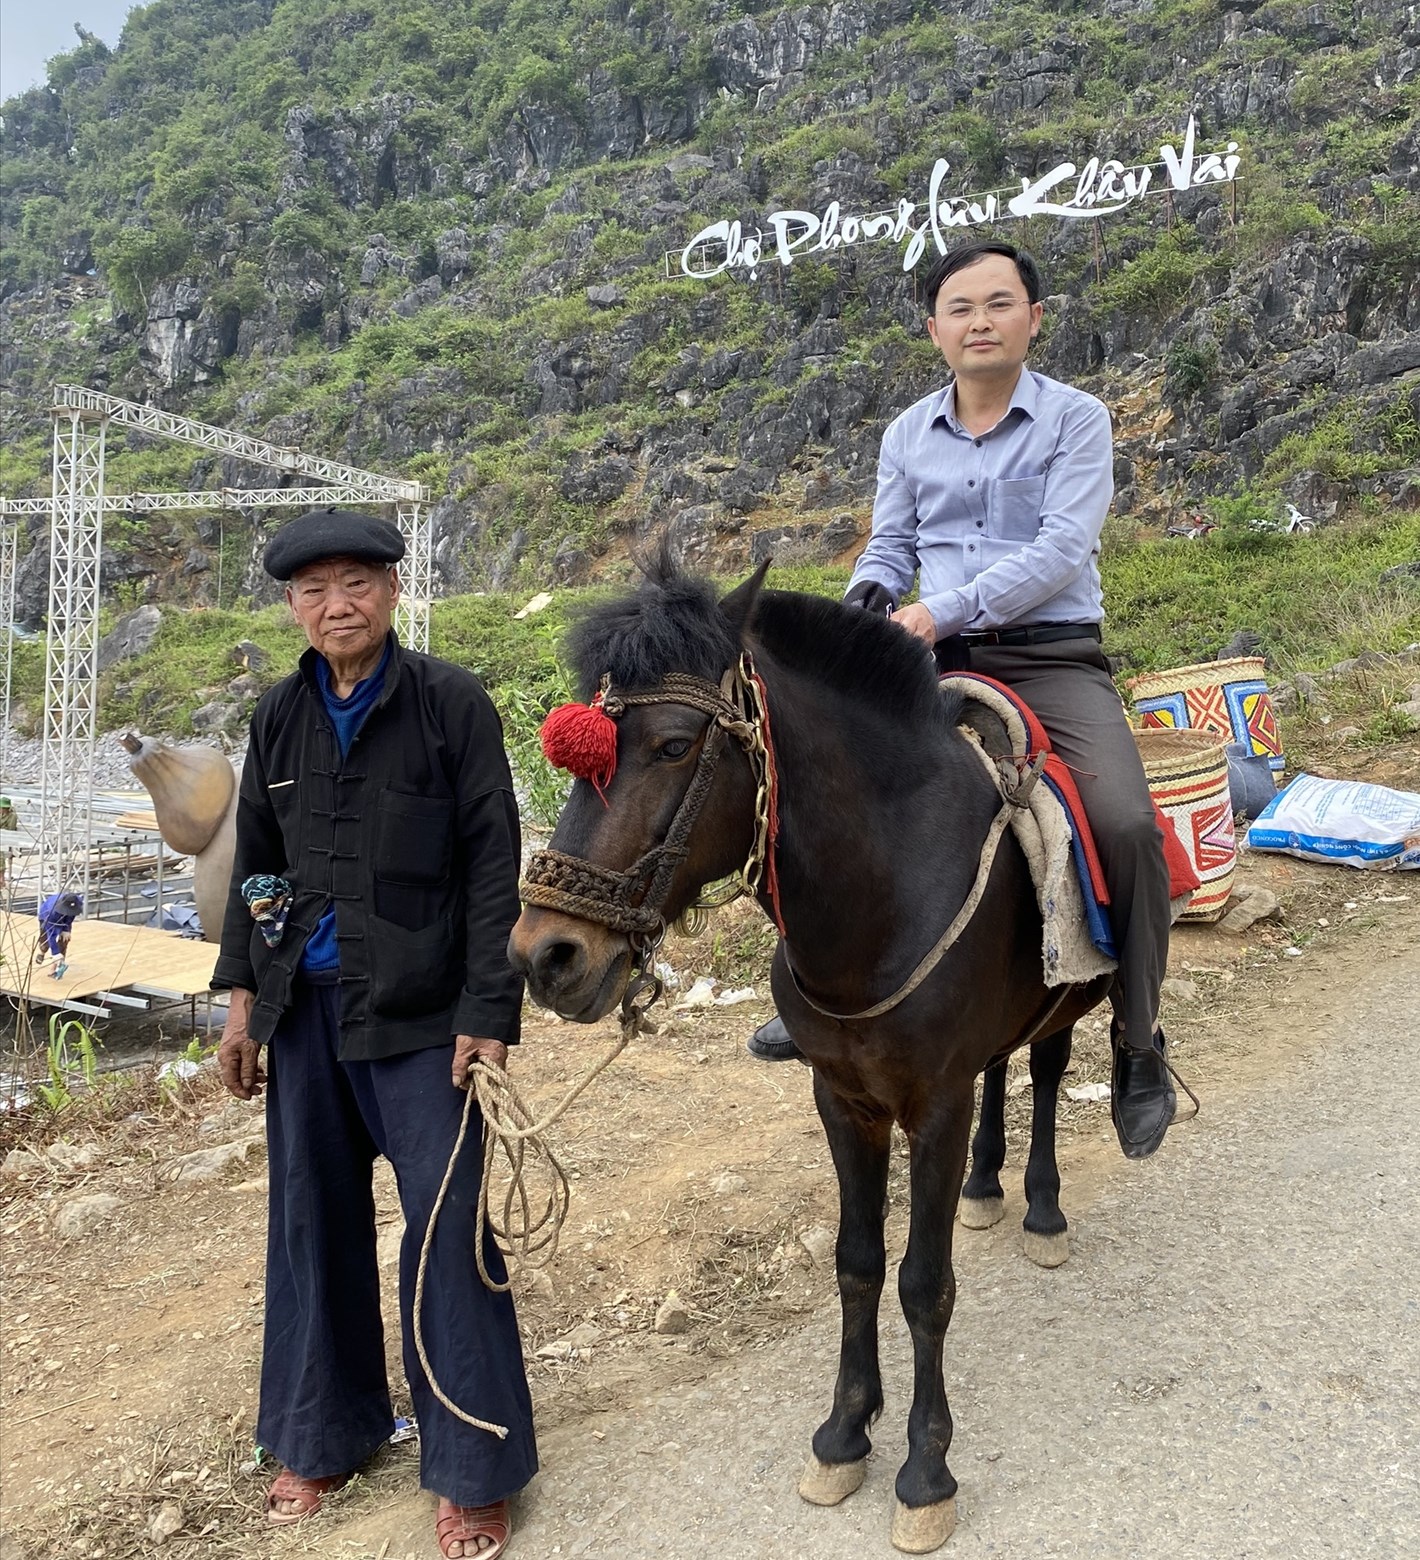 Trải nghiệm cưỡi ngựa về chợ Phong Lưu tìm bạn luôn được du khách thích thú tham gia 